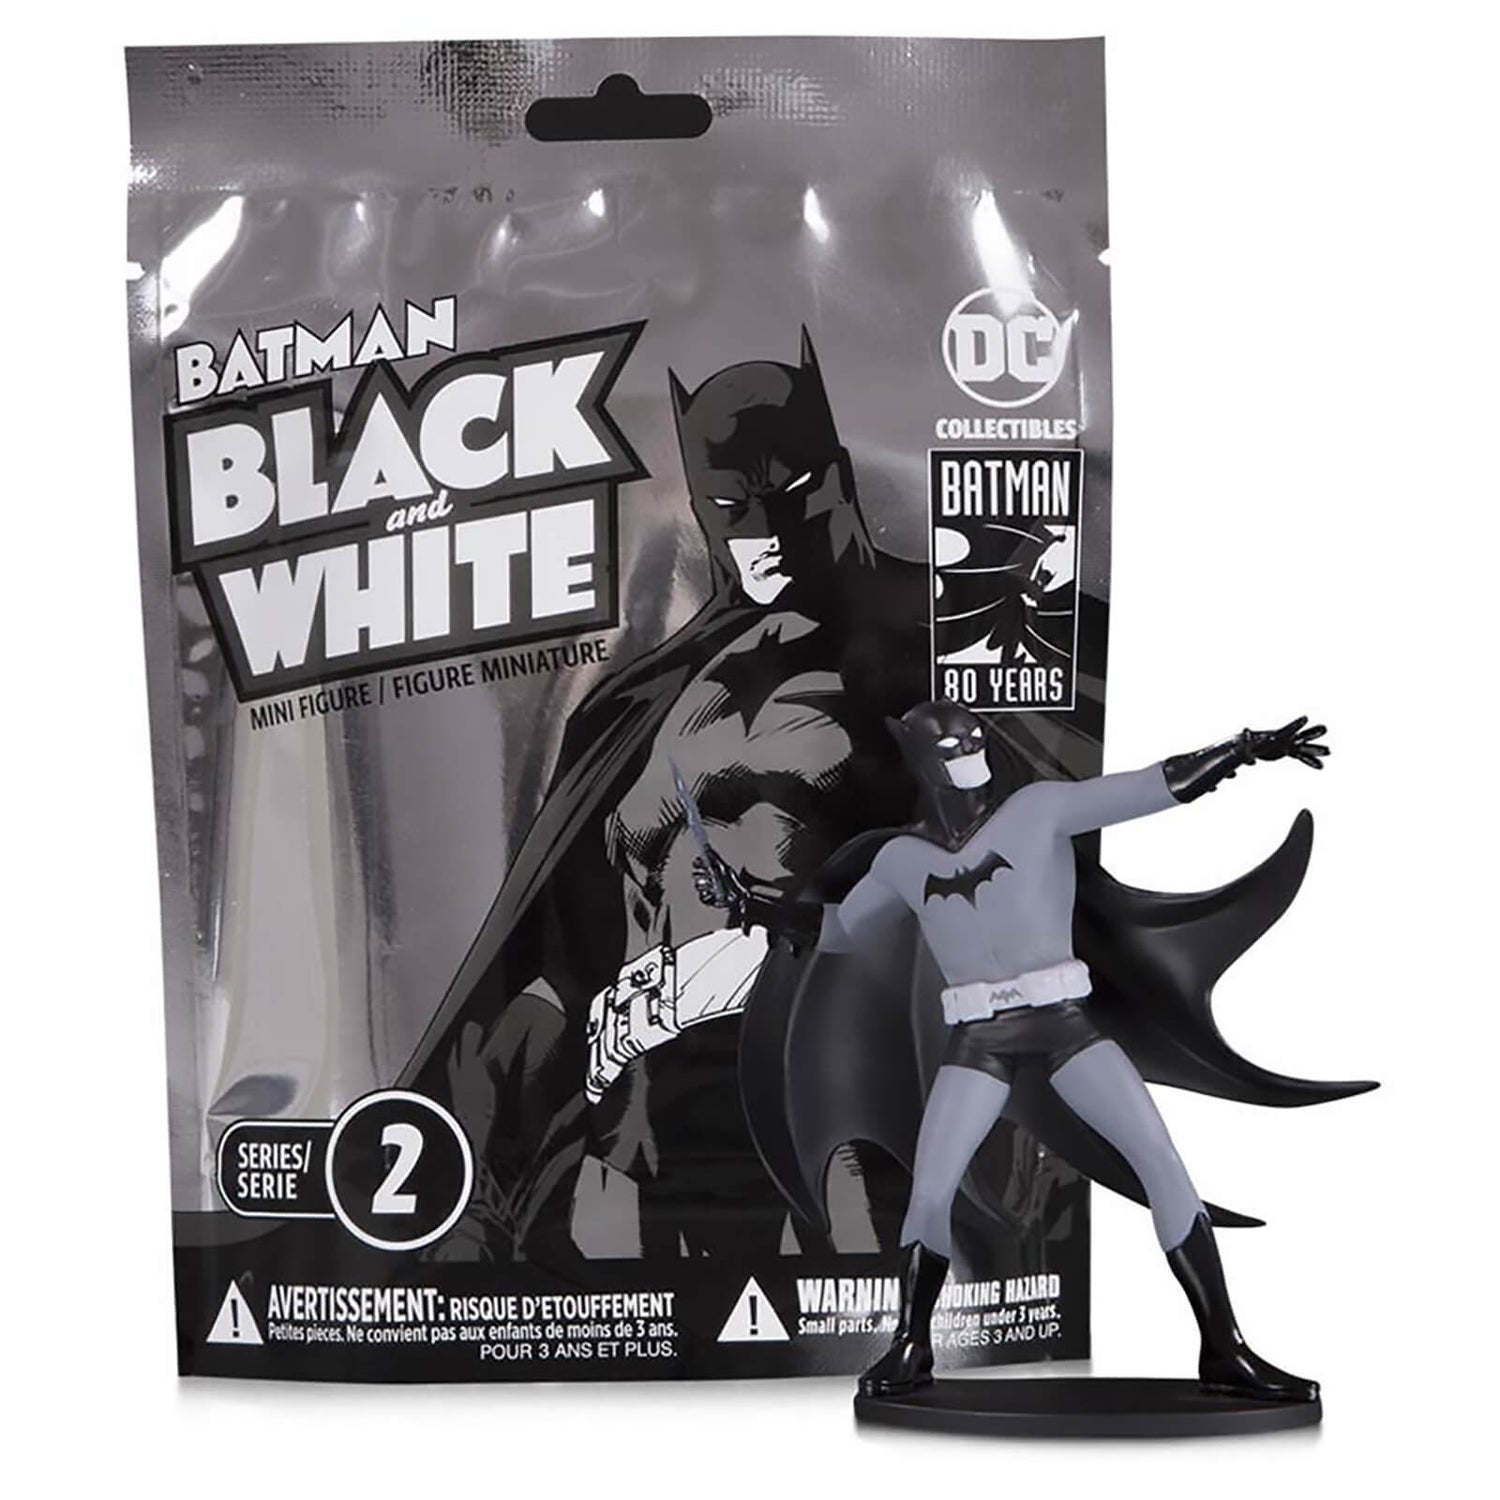 DC Collectibles DC Comics Batman Blind Bag Minifigur in Schwarz und Weiß - Welle 2 (Sortiment)